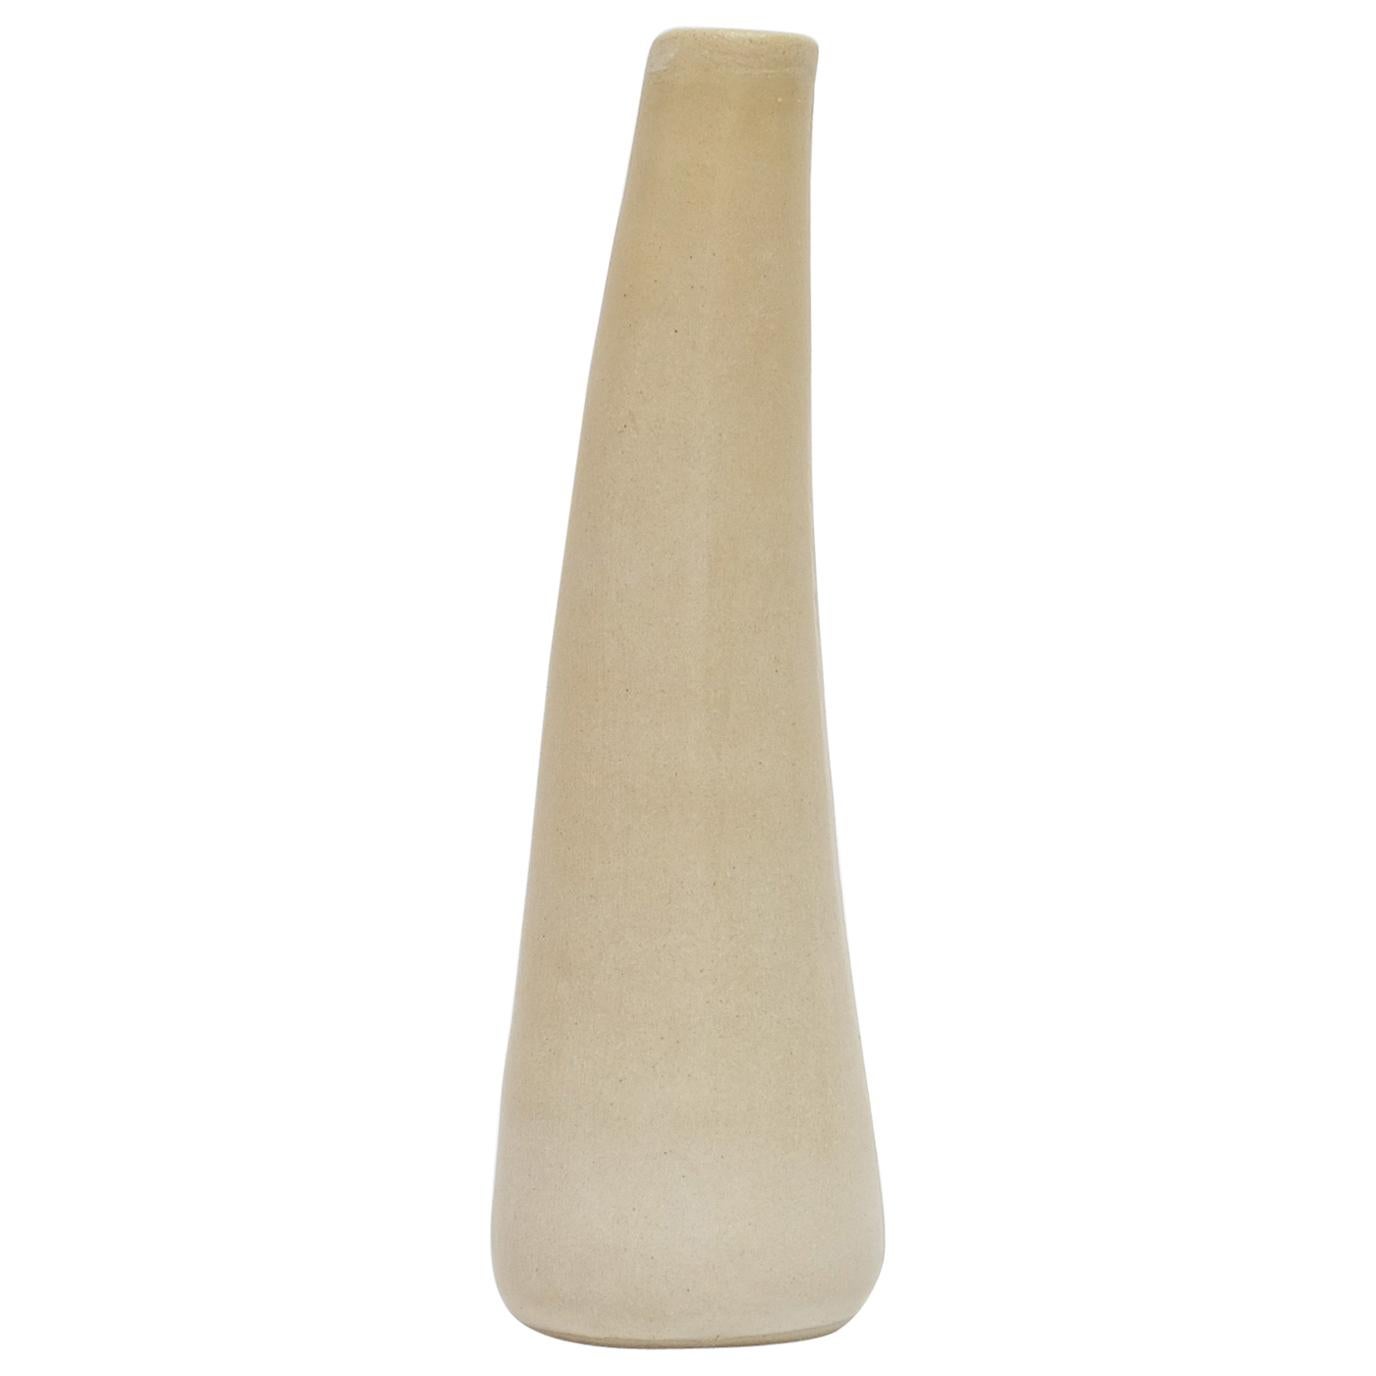 Solitario-Vase aus Steingut von Camila Apaez